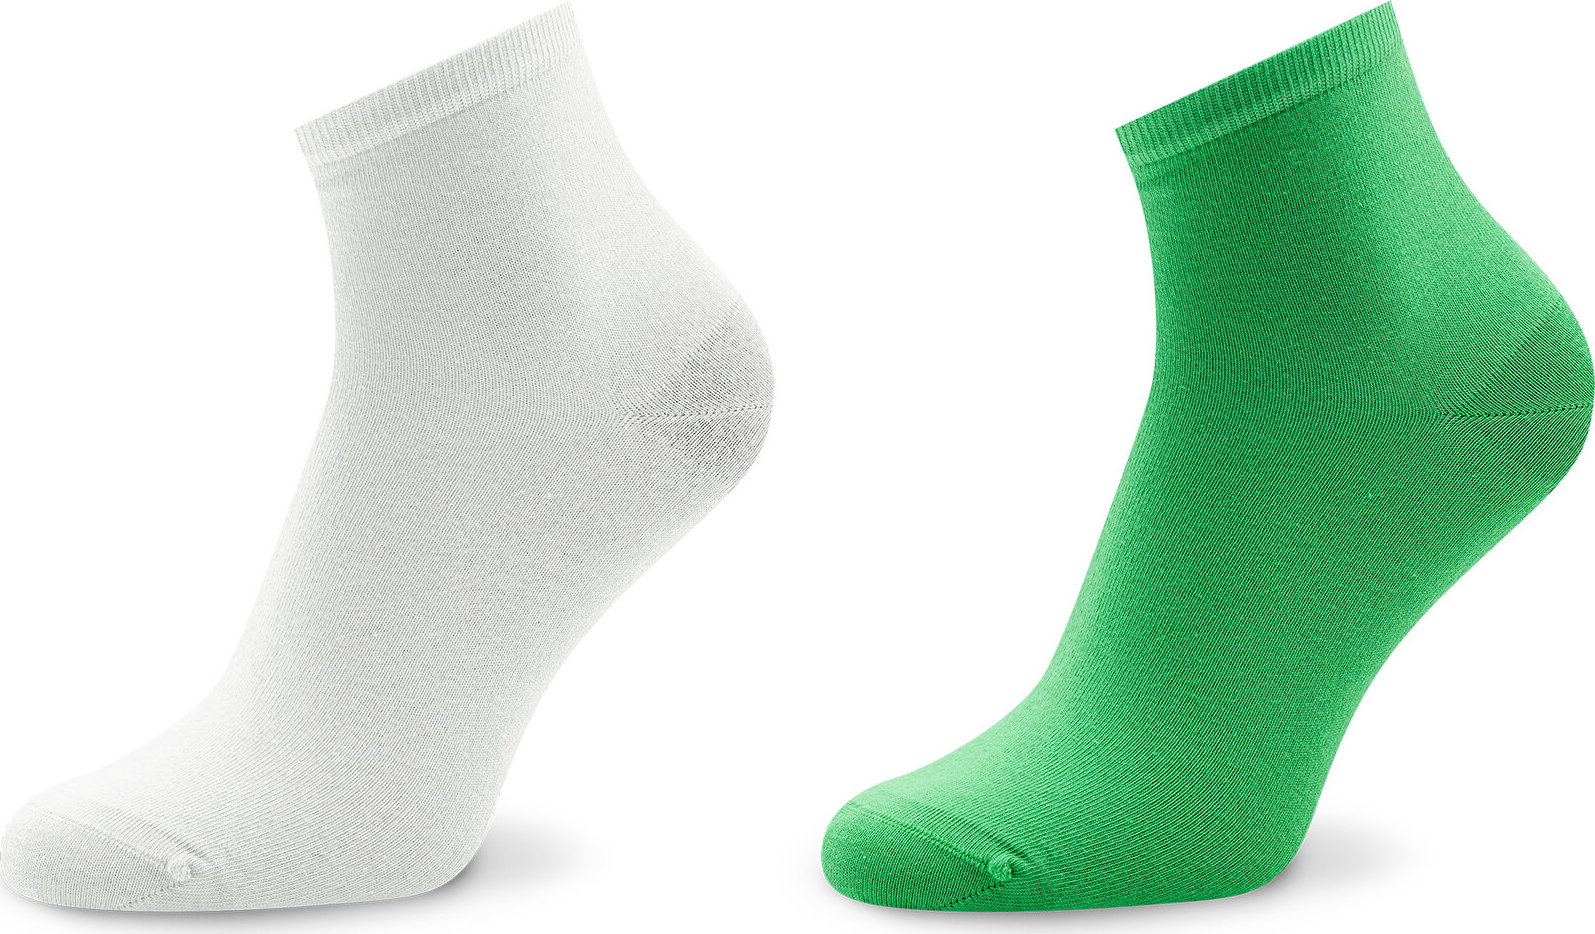 Sada 2 párů dámských nízkých ponožek Tommy Hilfiger 373001001 Green/Marshmallow 028